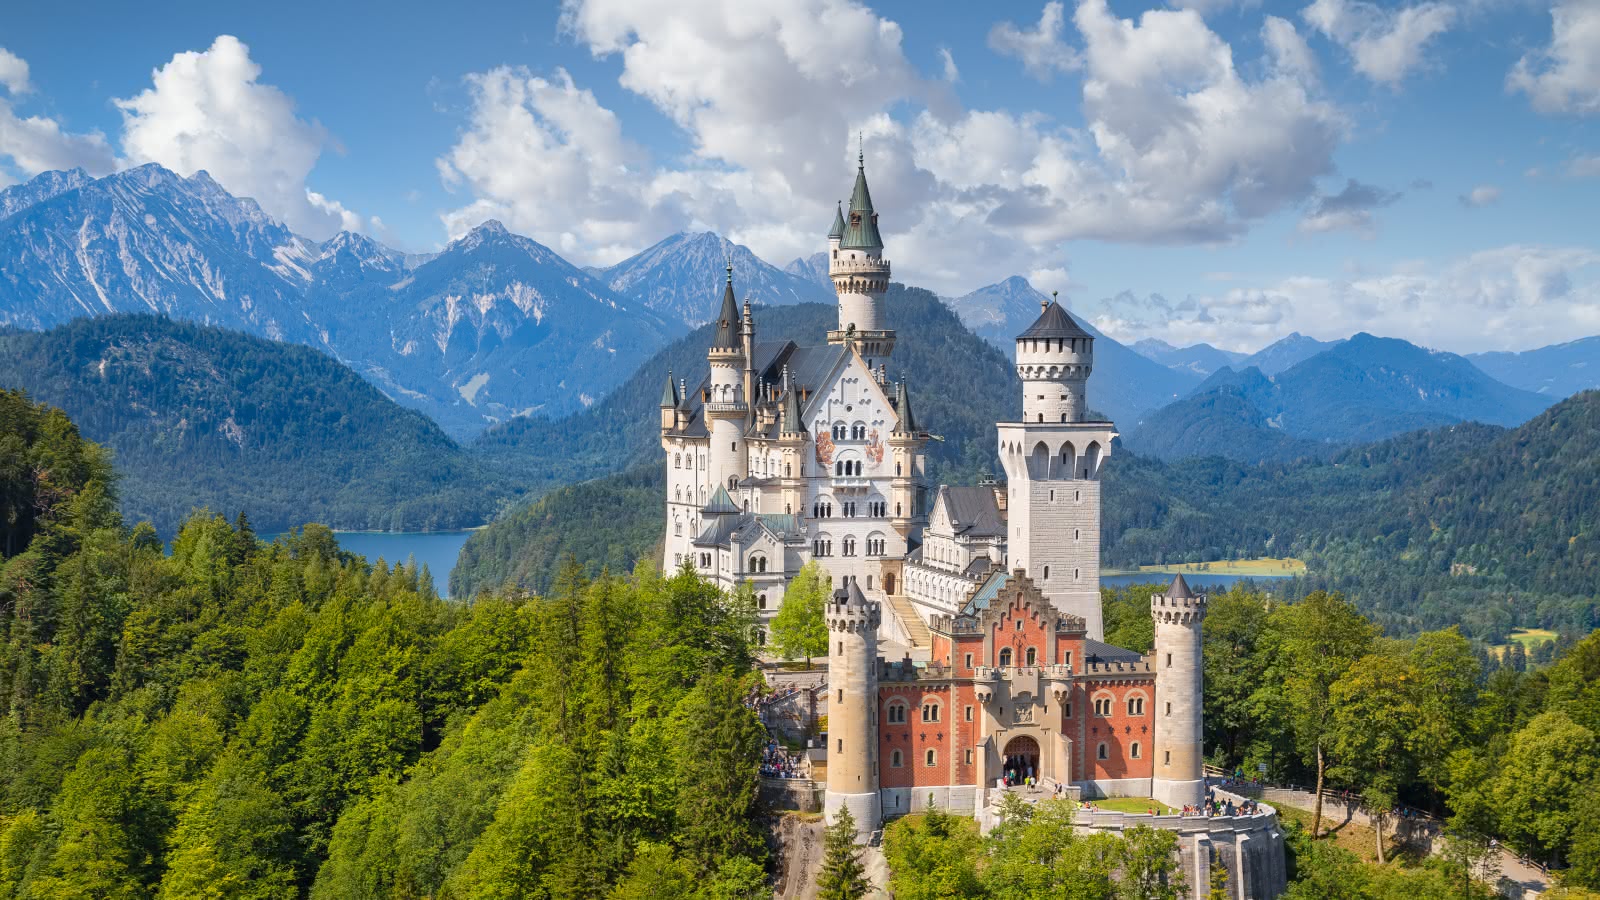 german castle tours